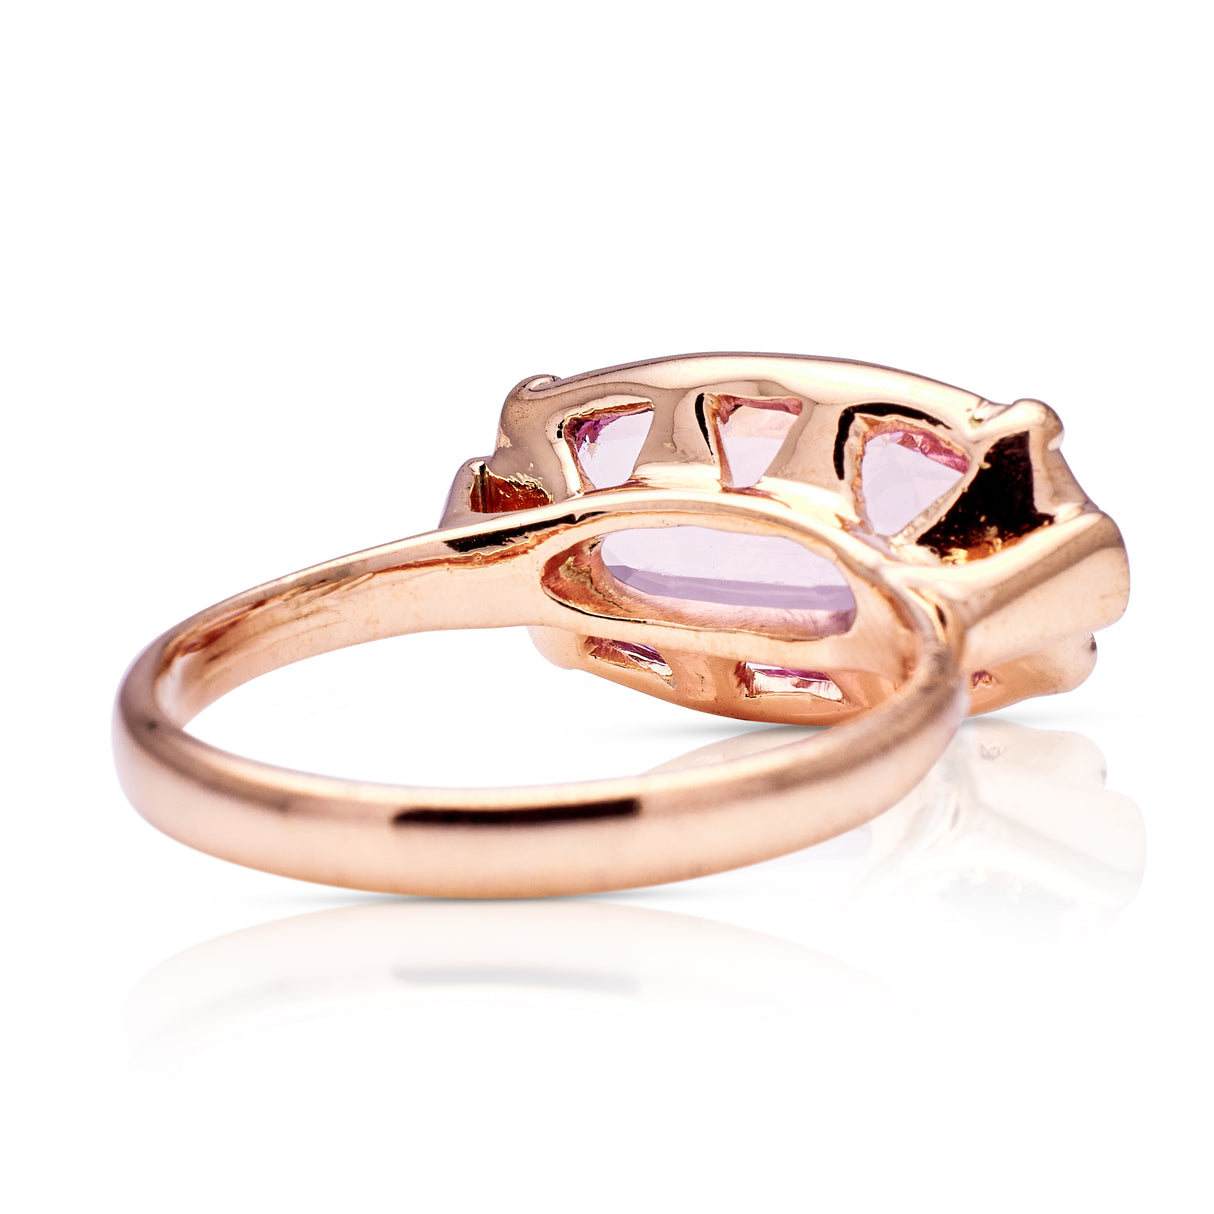 Vintage, pale pink topaz ring, 14ct rose gold